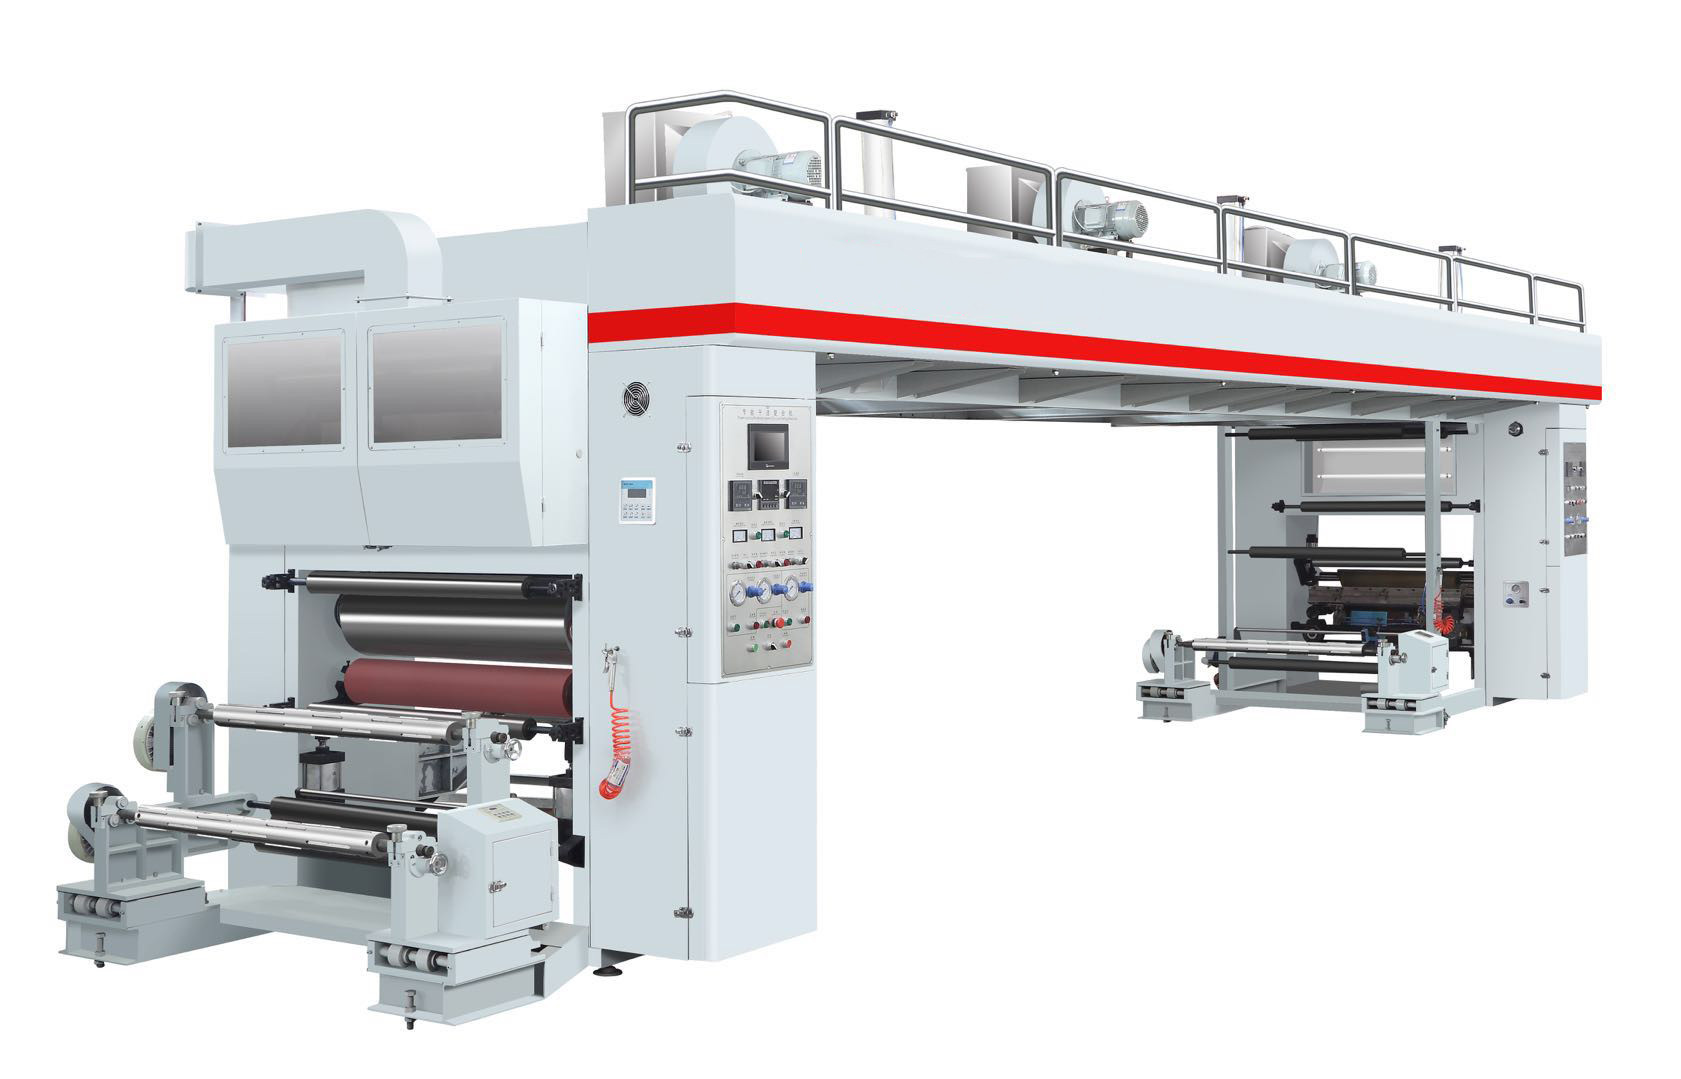 印前印后数字化网络技术深入印刷生产流程